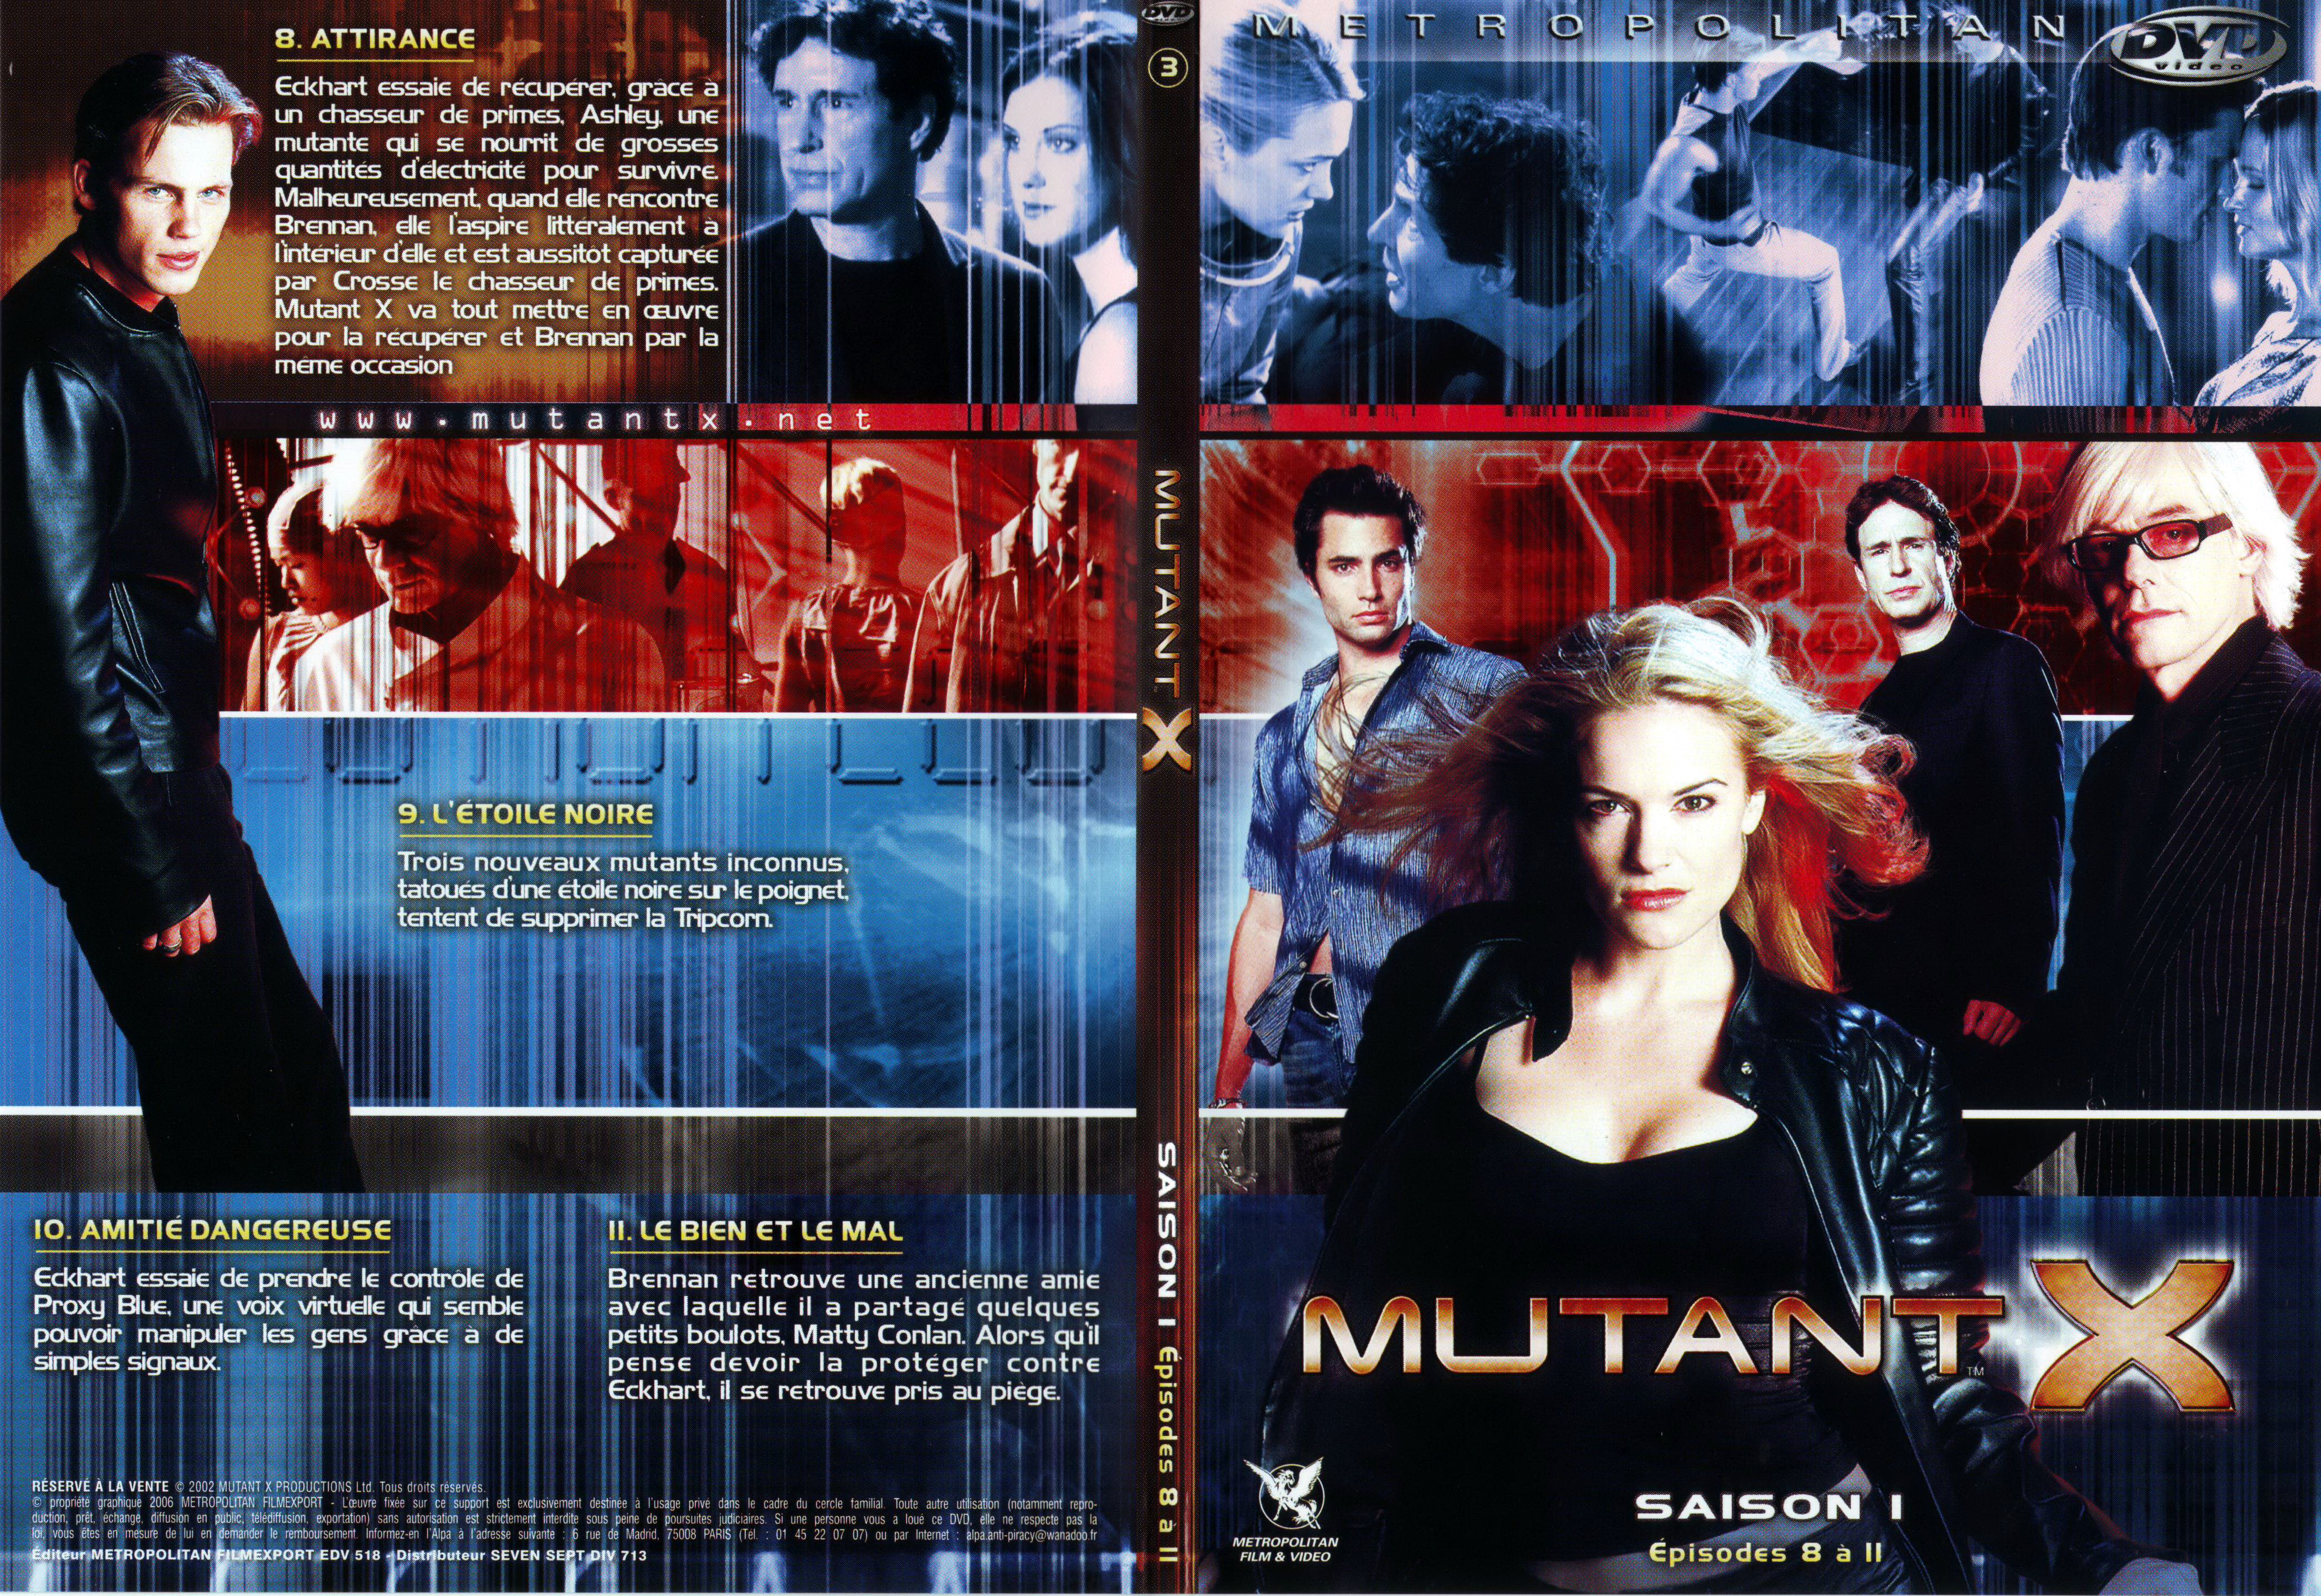 Jaquette DVD Mutant X saison 1 DVD 3